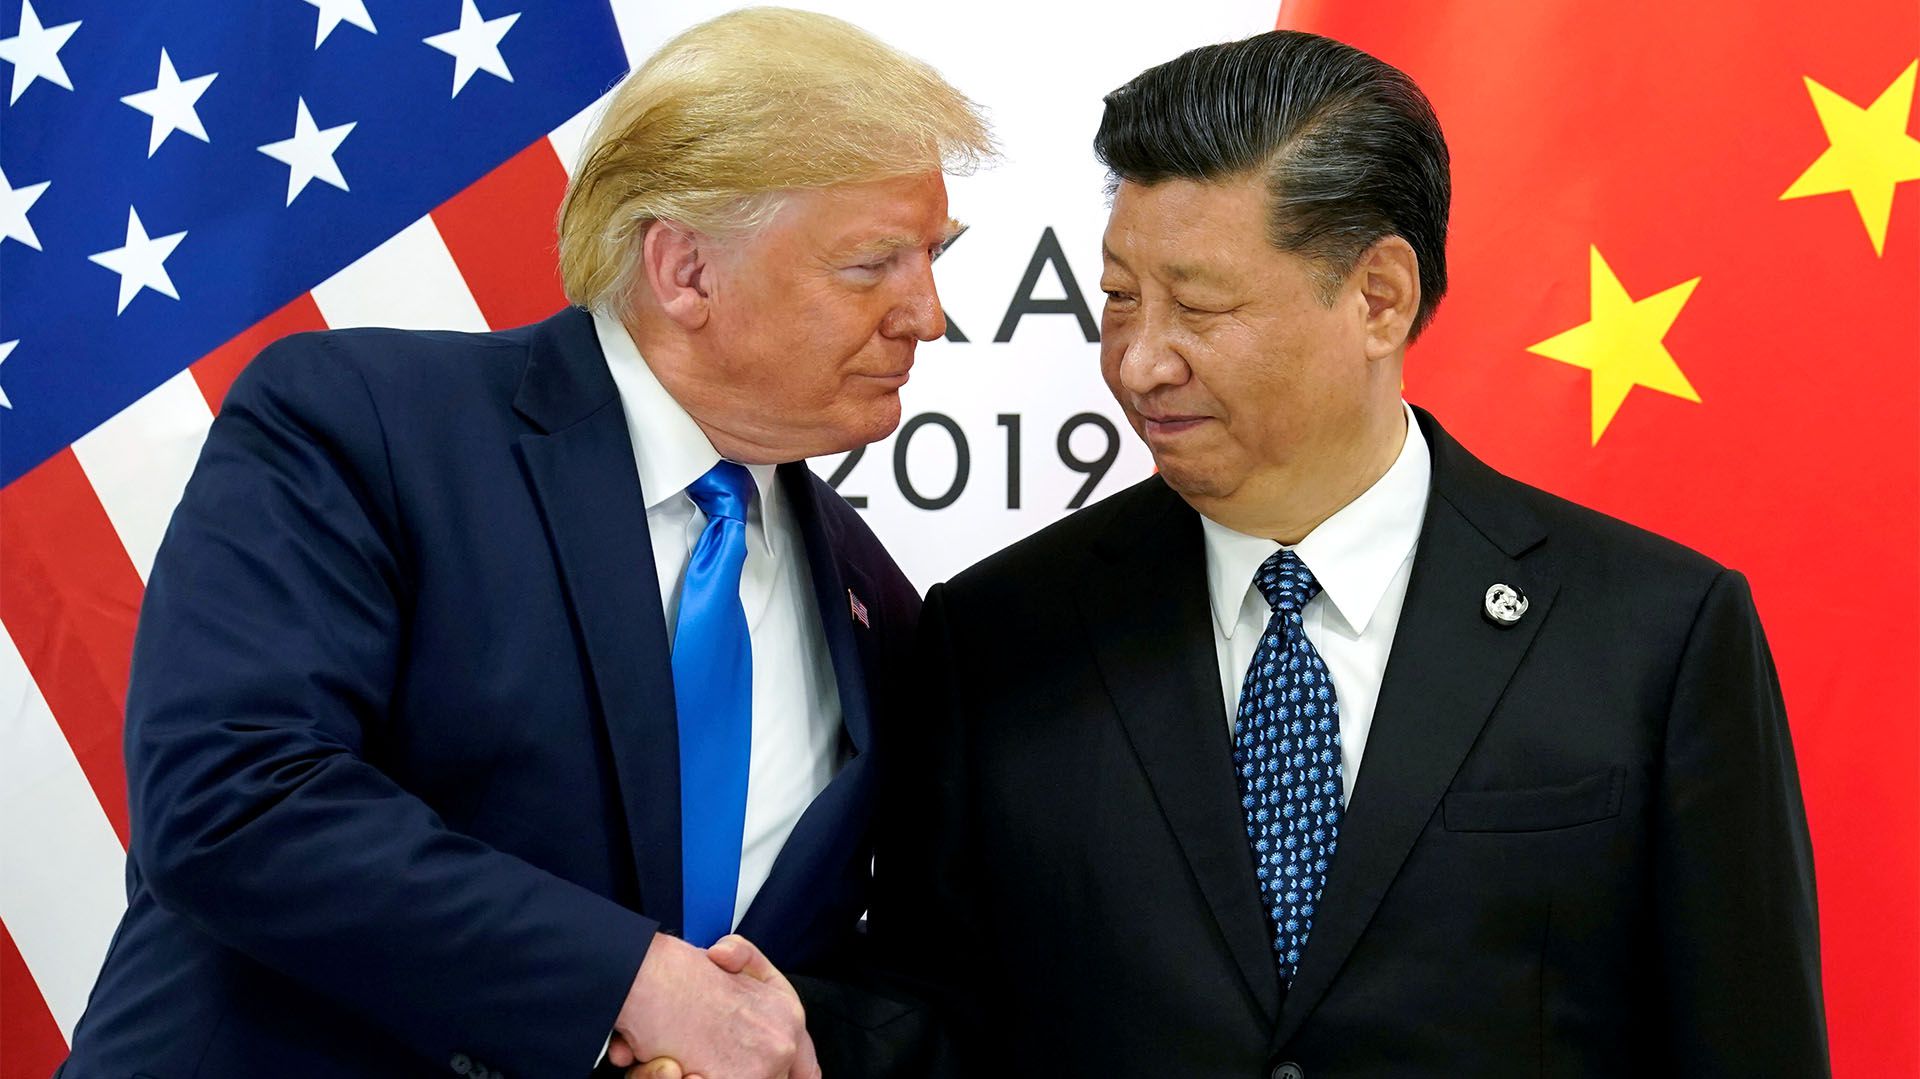 El presidente de Estados Unidos, Donald Trump, durante una reunión con el presidente chino Xi Jinping en la cumbre de líderes del G20 en Osaka, Japón, el 29 de junio de 2019 (REUTERS/Kevin Lamarque/File Photo)